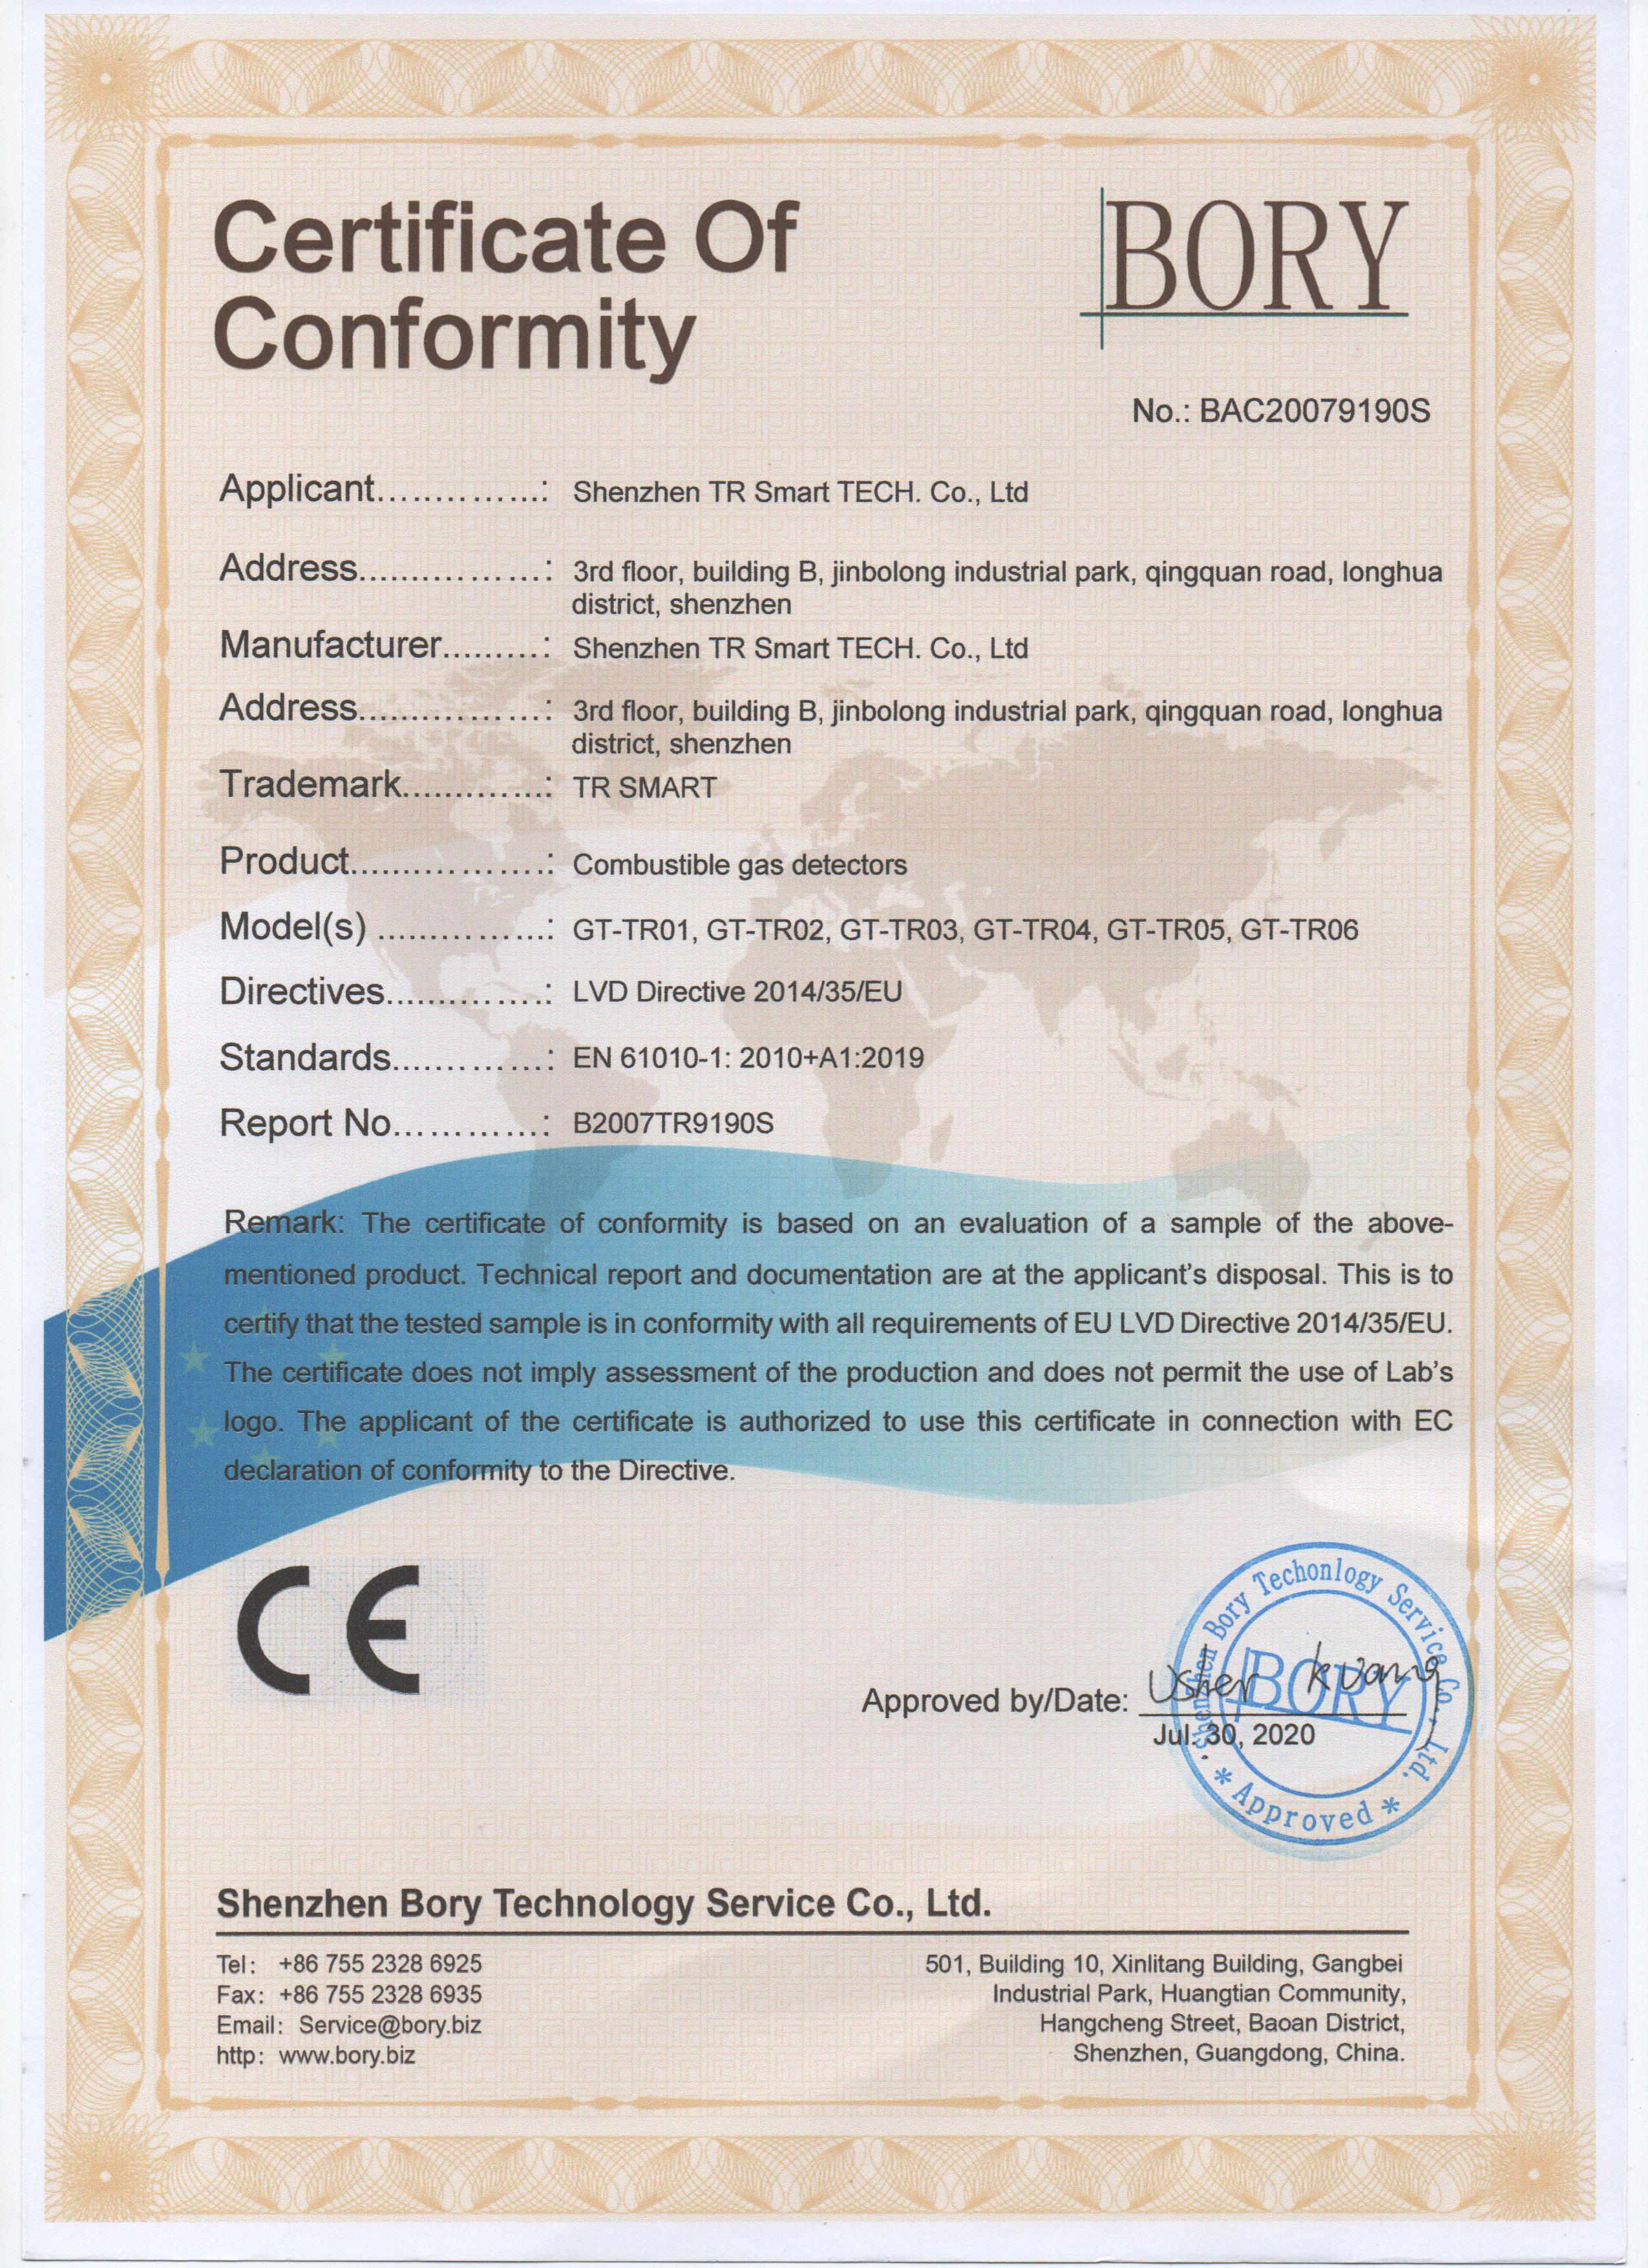 祝贺泰燃智能点型可燃气体探测器顺利通过CE认证并取得证书